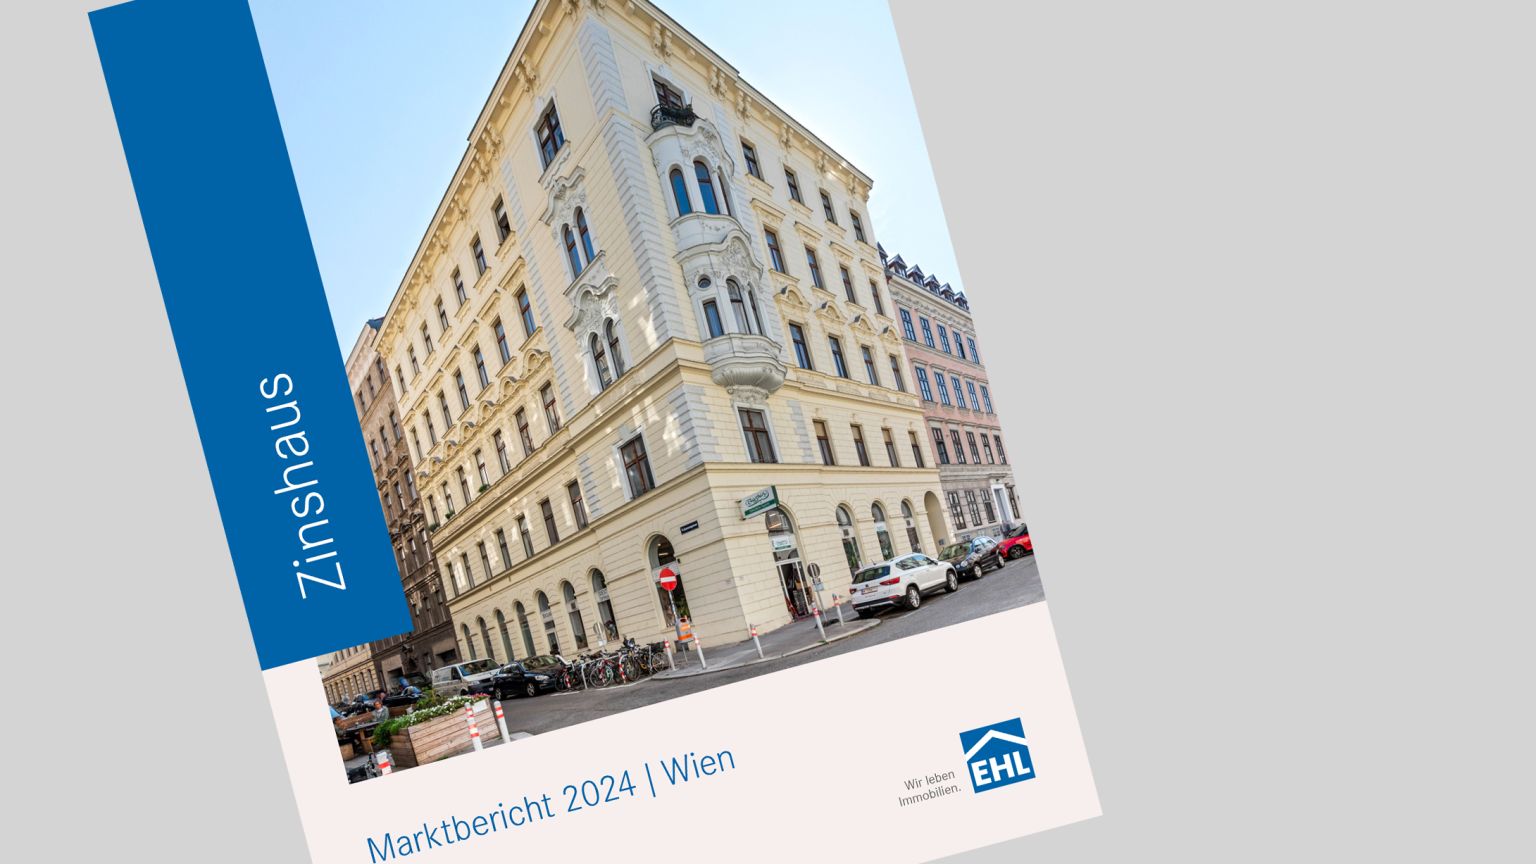 EHL Marktbericht: Vorsichtiger Optimismus für den Wiener Zinshausmarkt